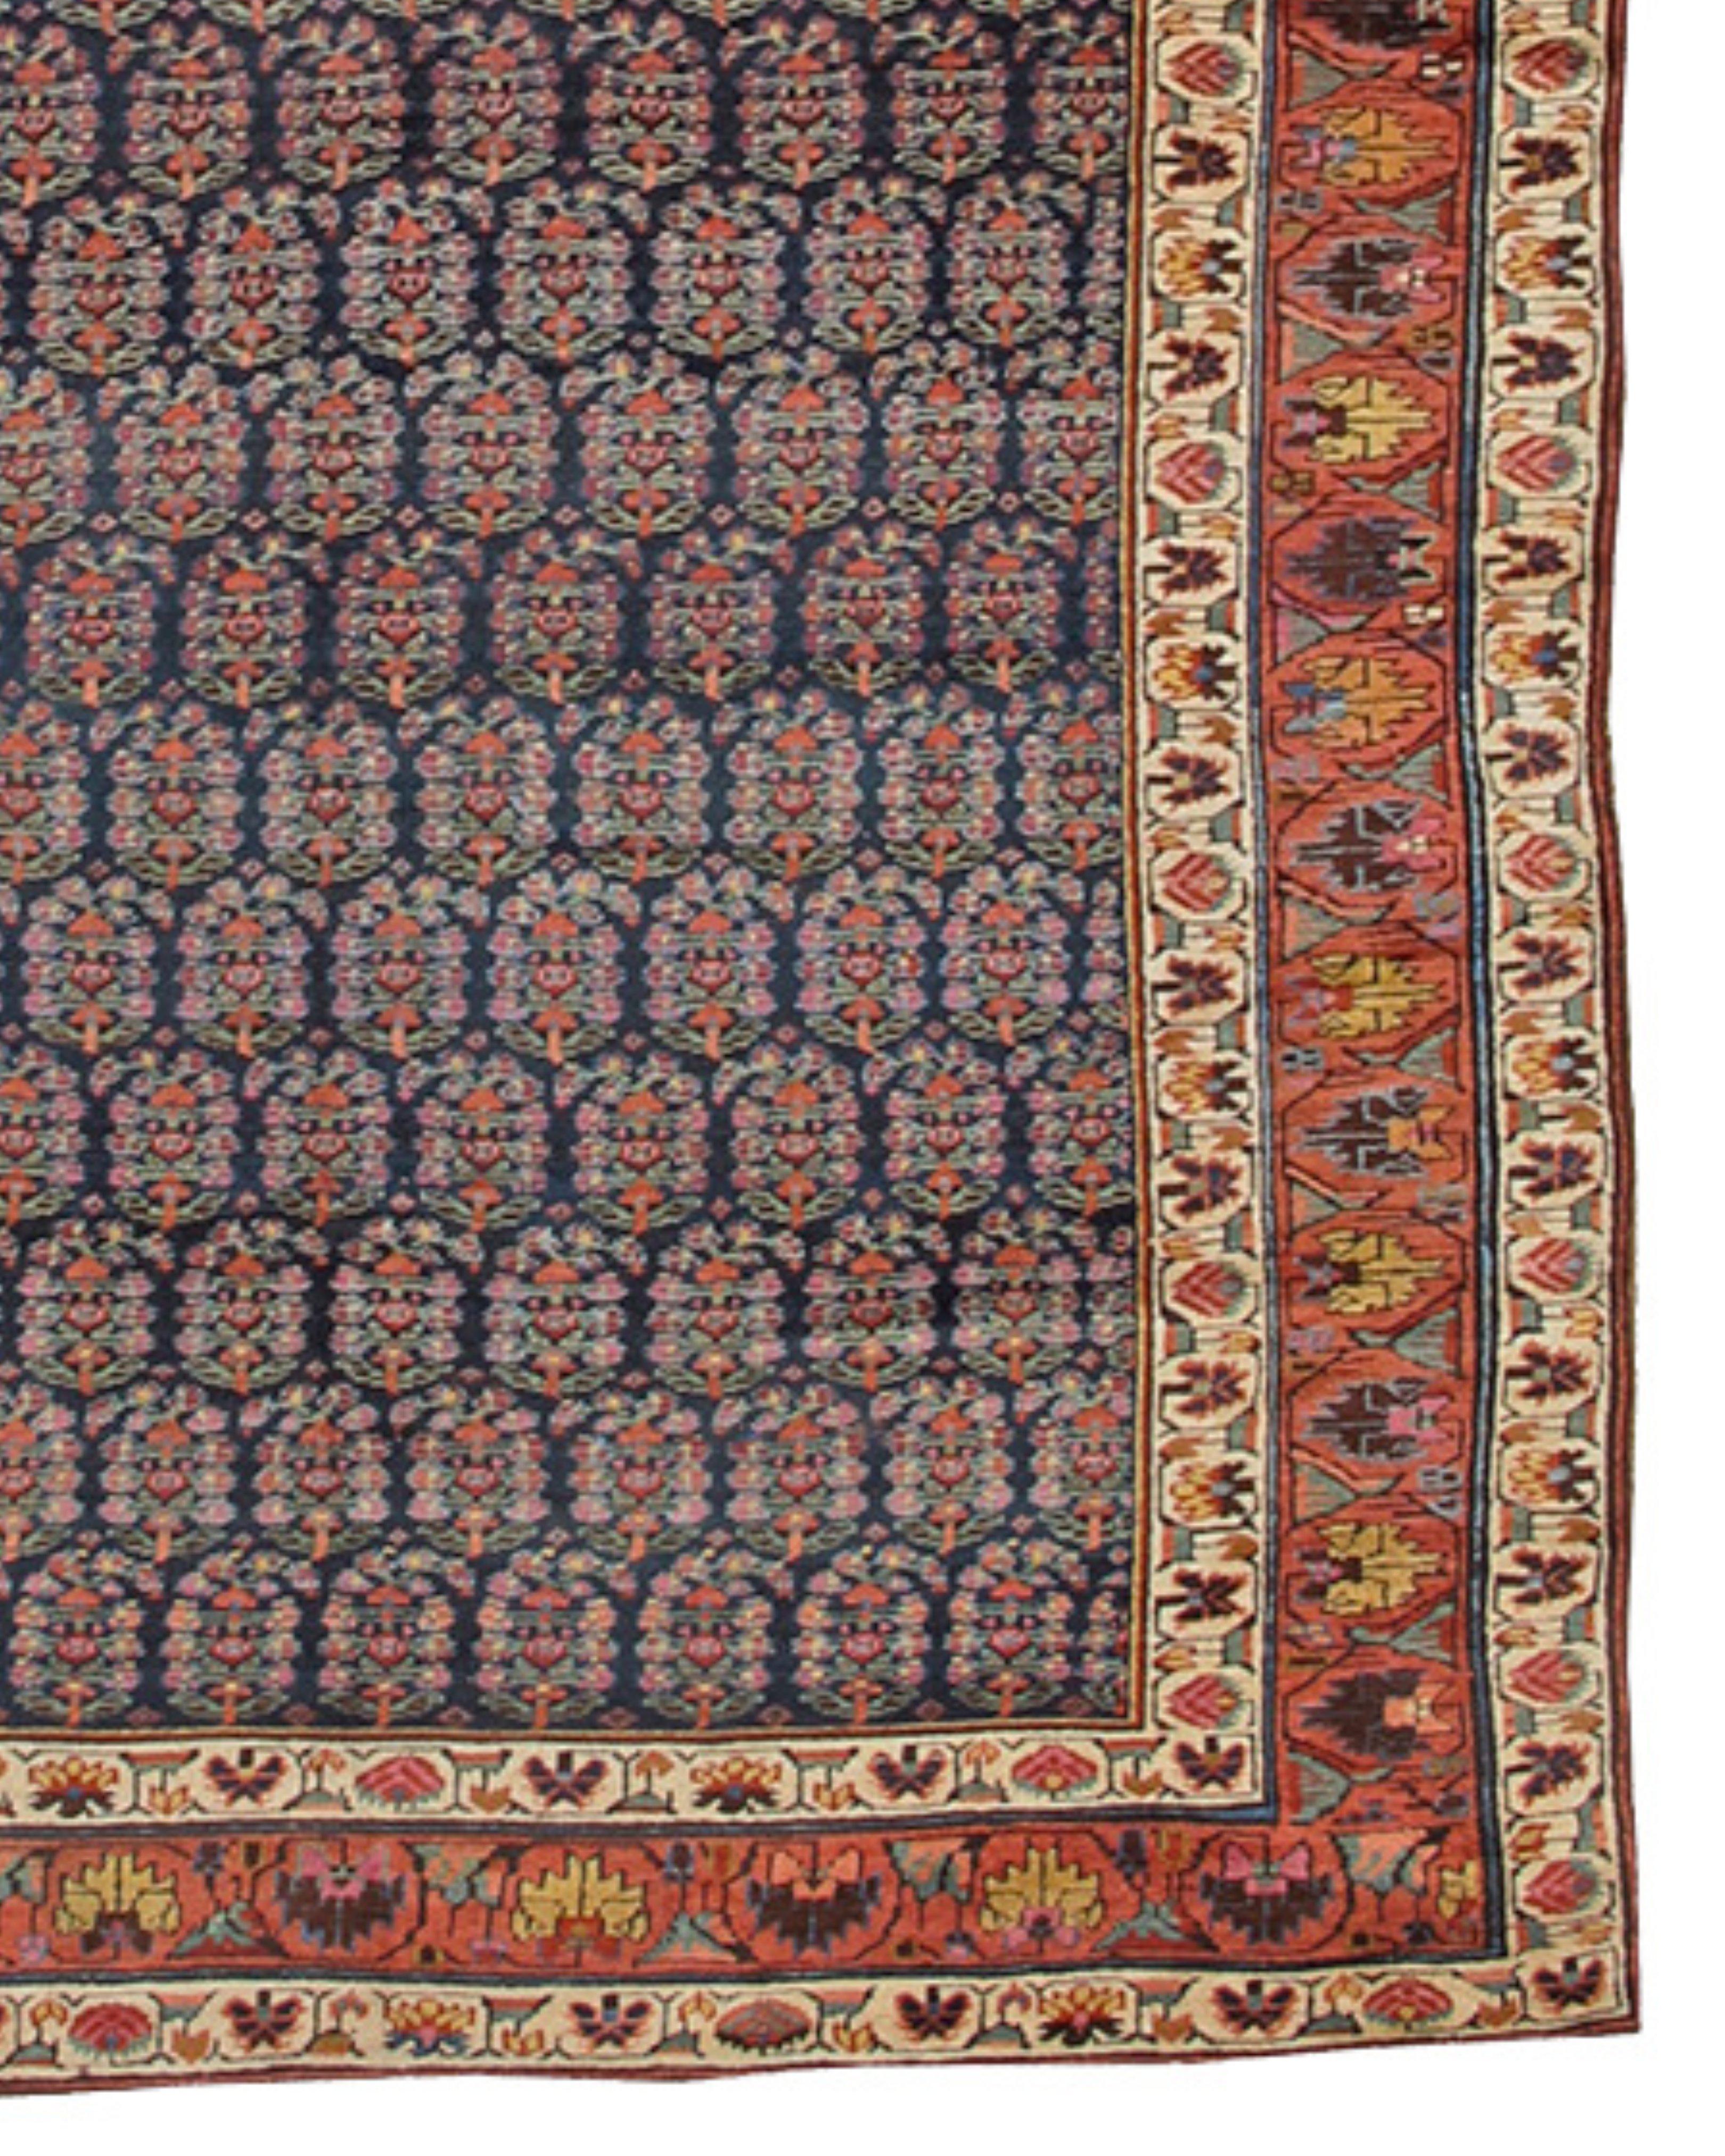 19th Century Antique Northwest Persian Rug, c. 1866 For Sale